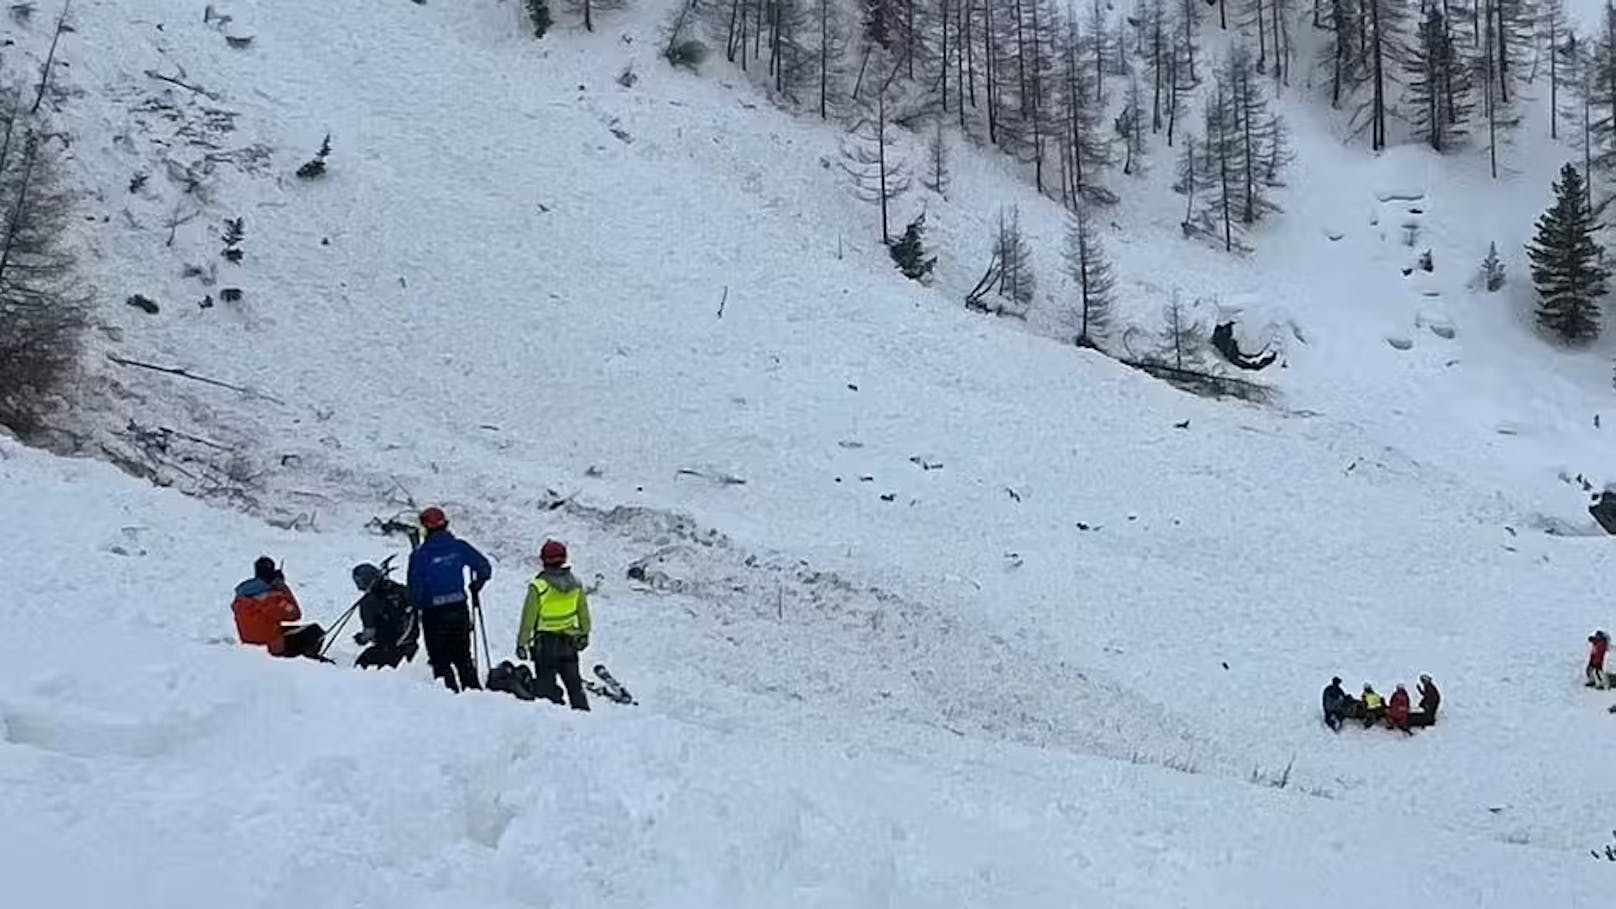 Tragödie in Skigebiet – drei Tote nach Lawinenabgang